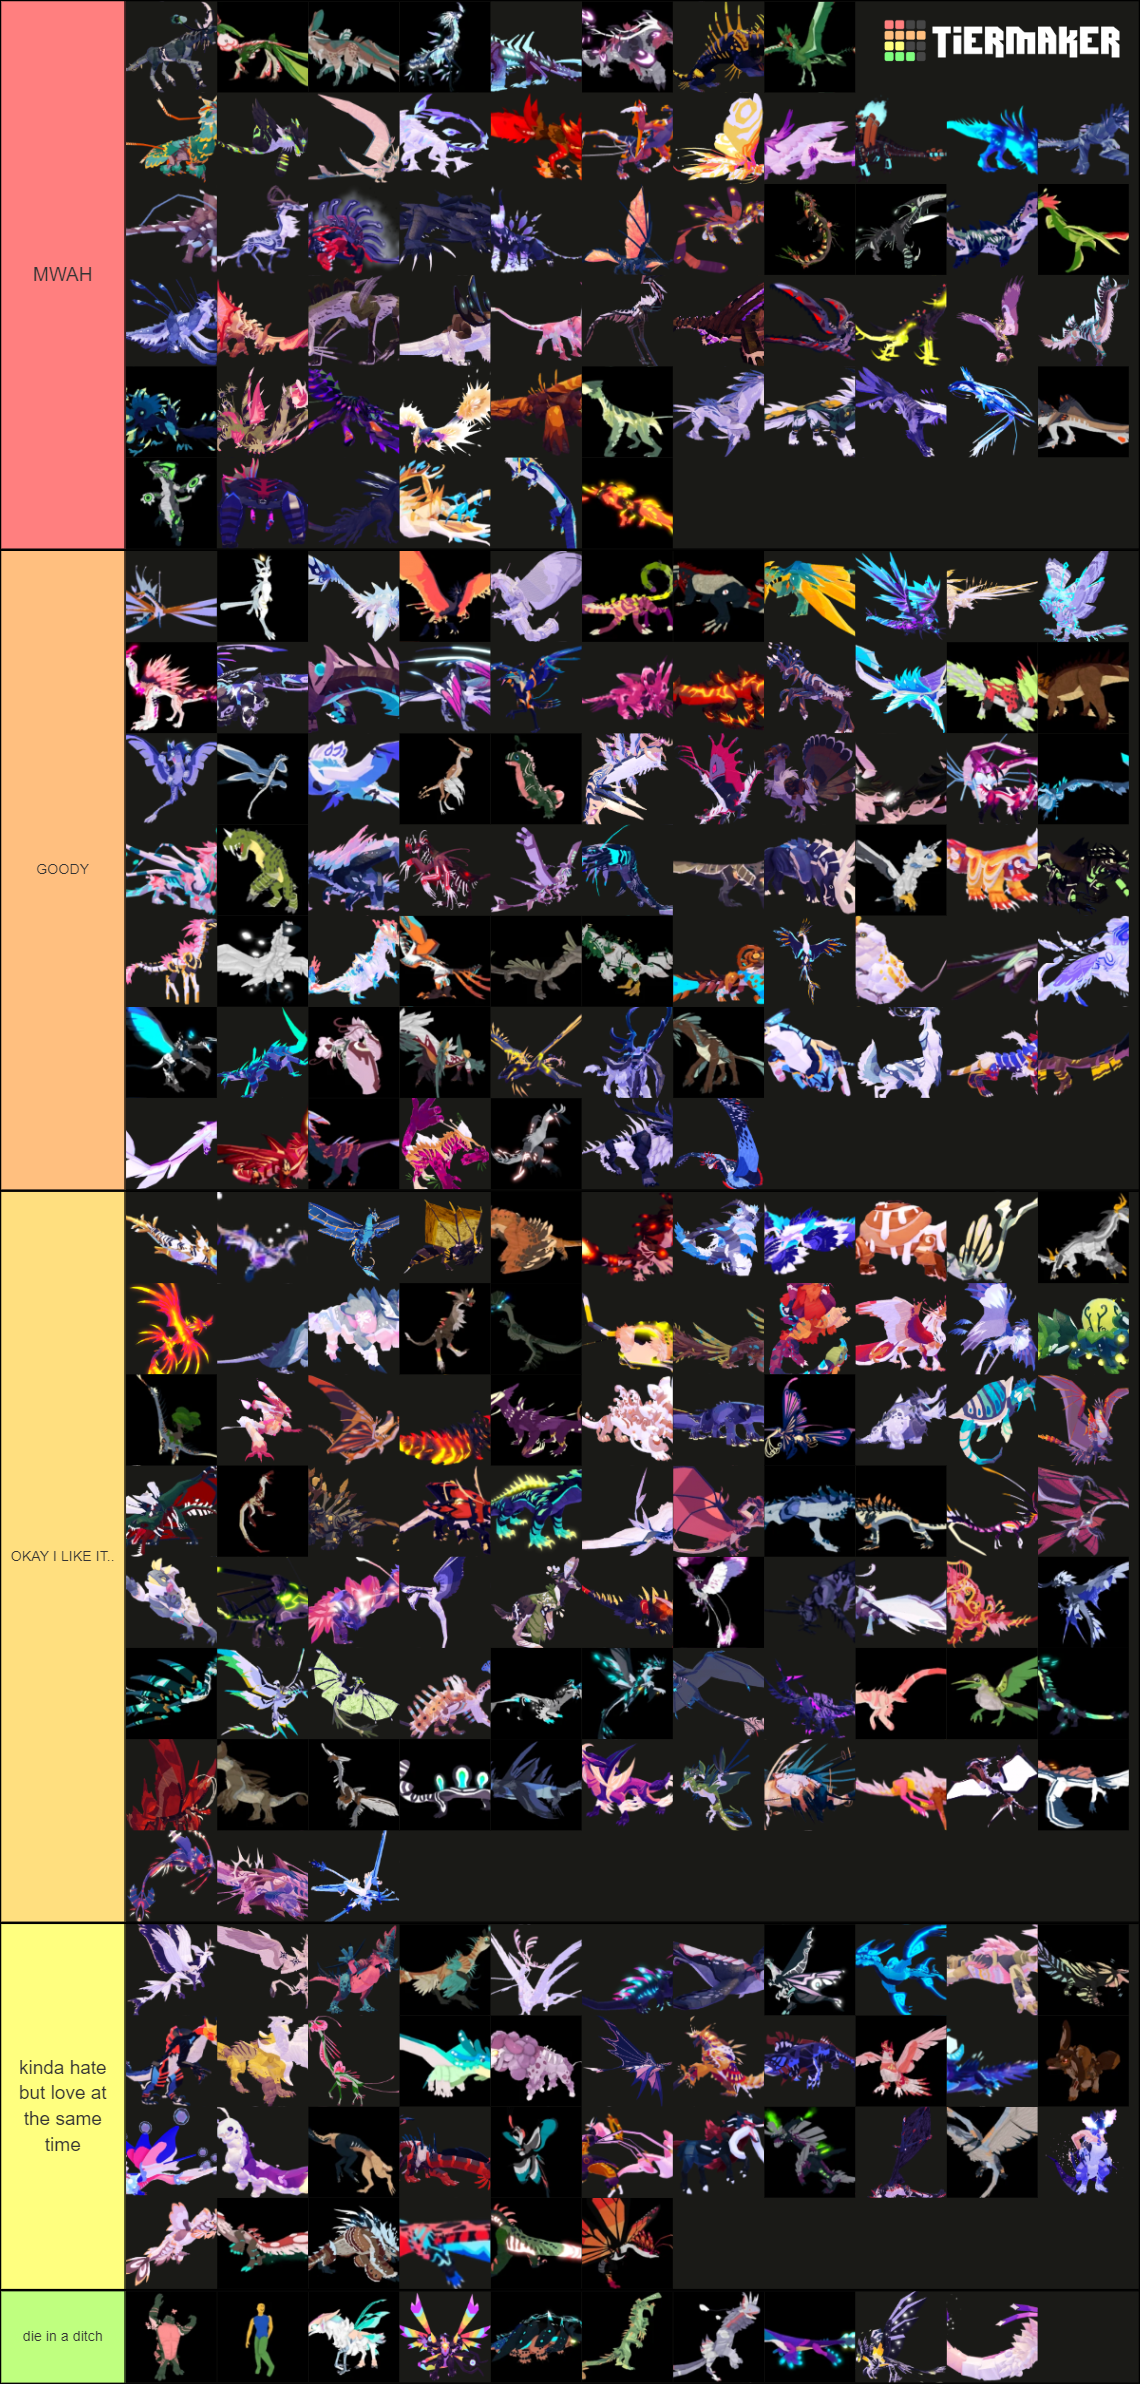 Creatures of Sonaria Tier List (December 2023) – Best Creatures - Gamer  Empire